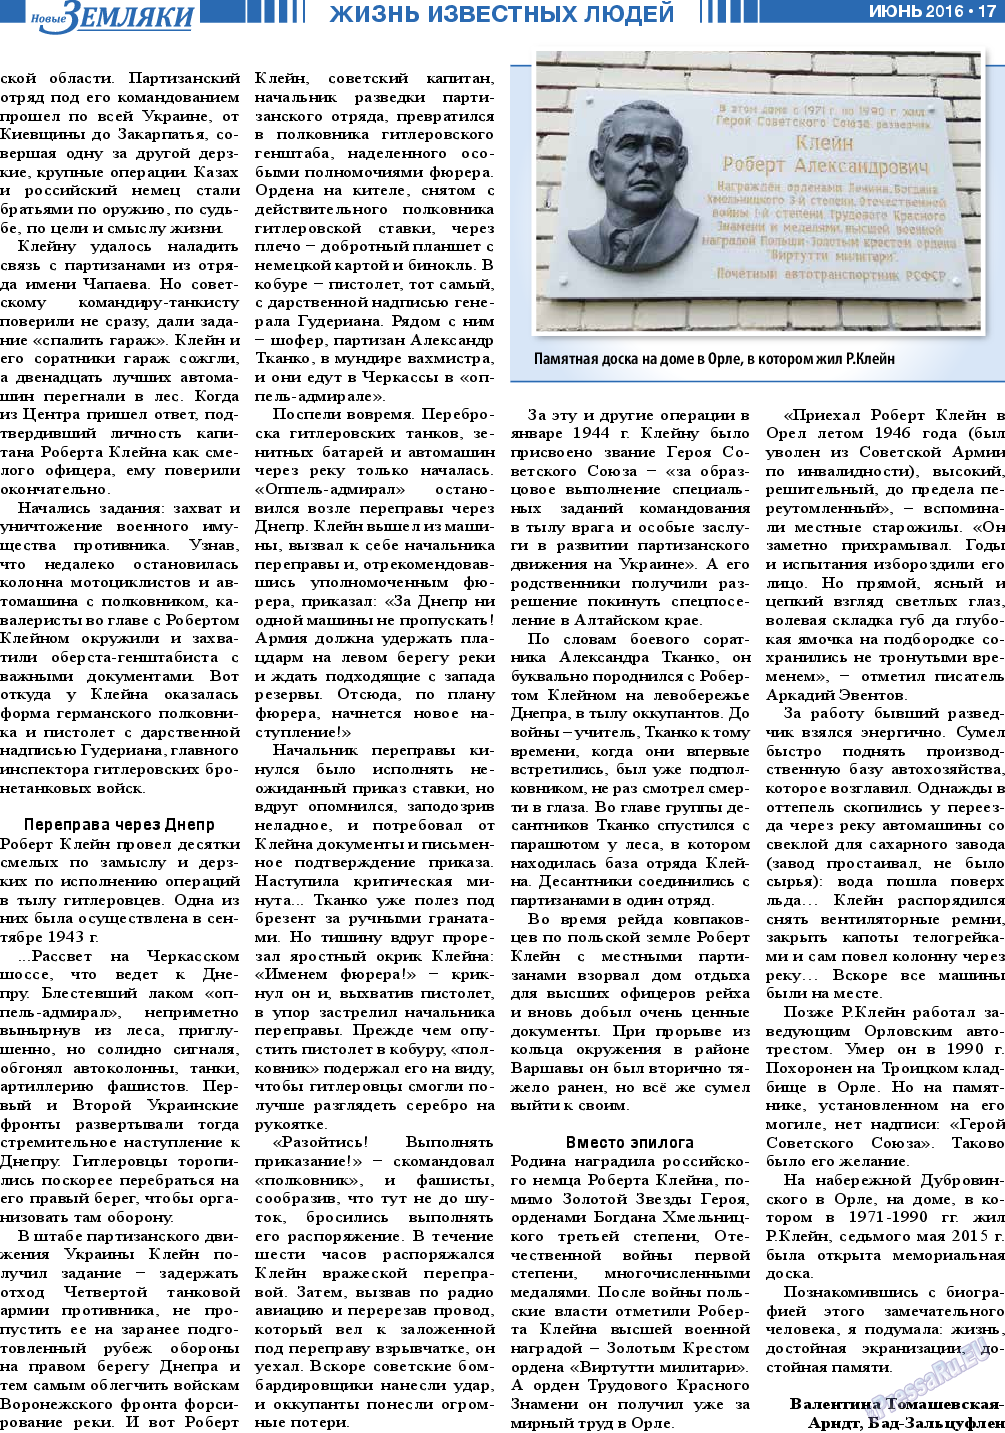 Новые Земляки (газета). 2016 год, номер 6, стр. 17